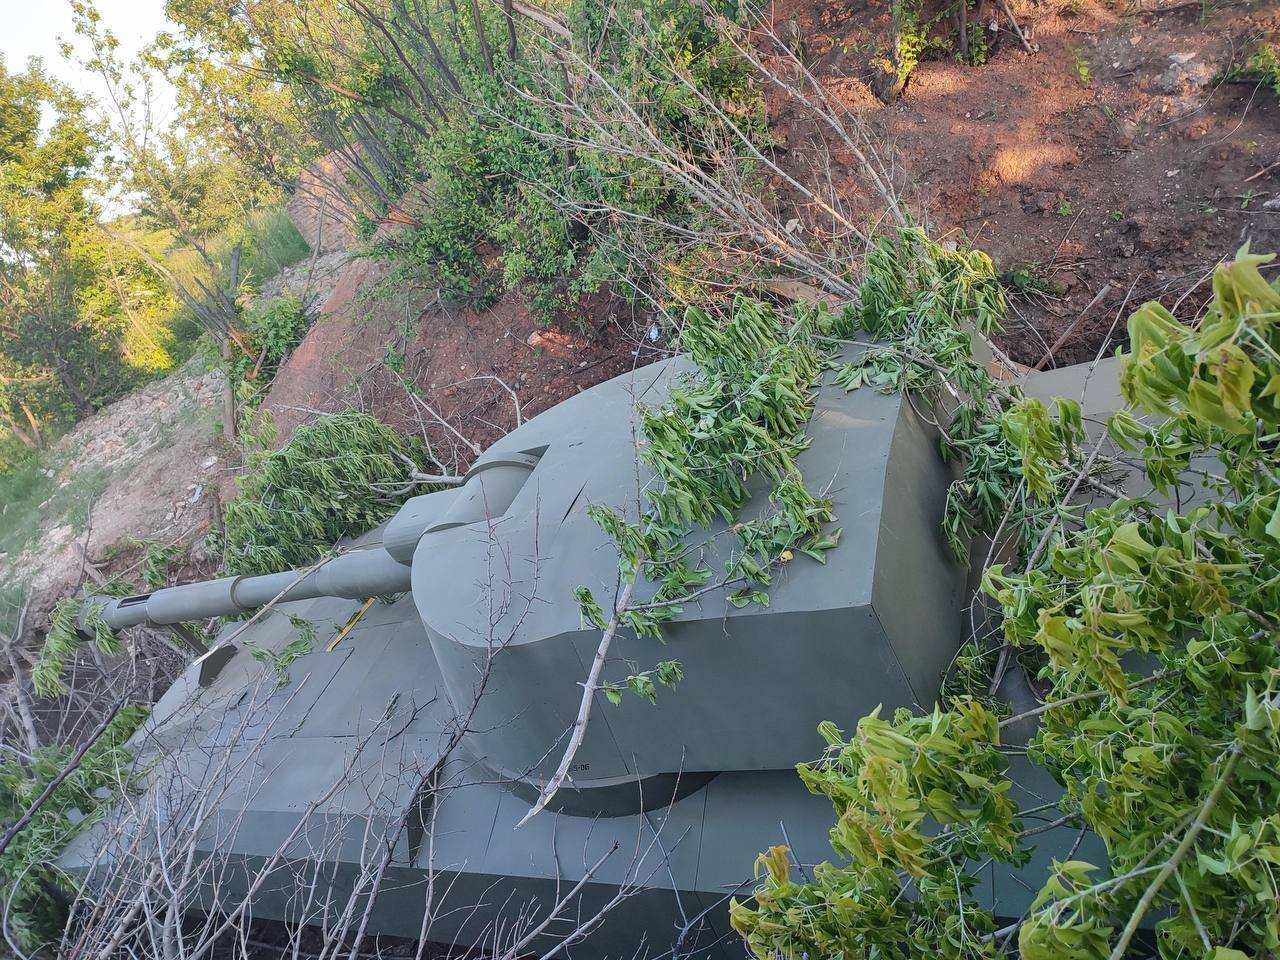 Цього разу макет української гаубиці: російські окупанти знищили черговий муляж військової техніки. Фото